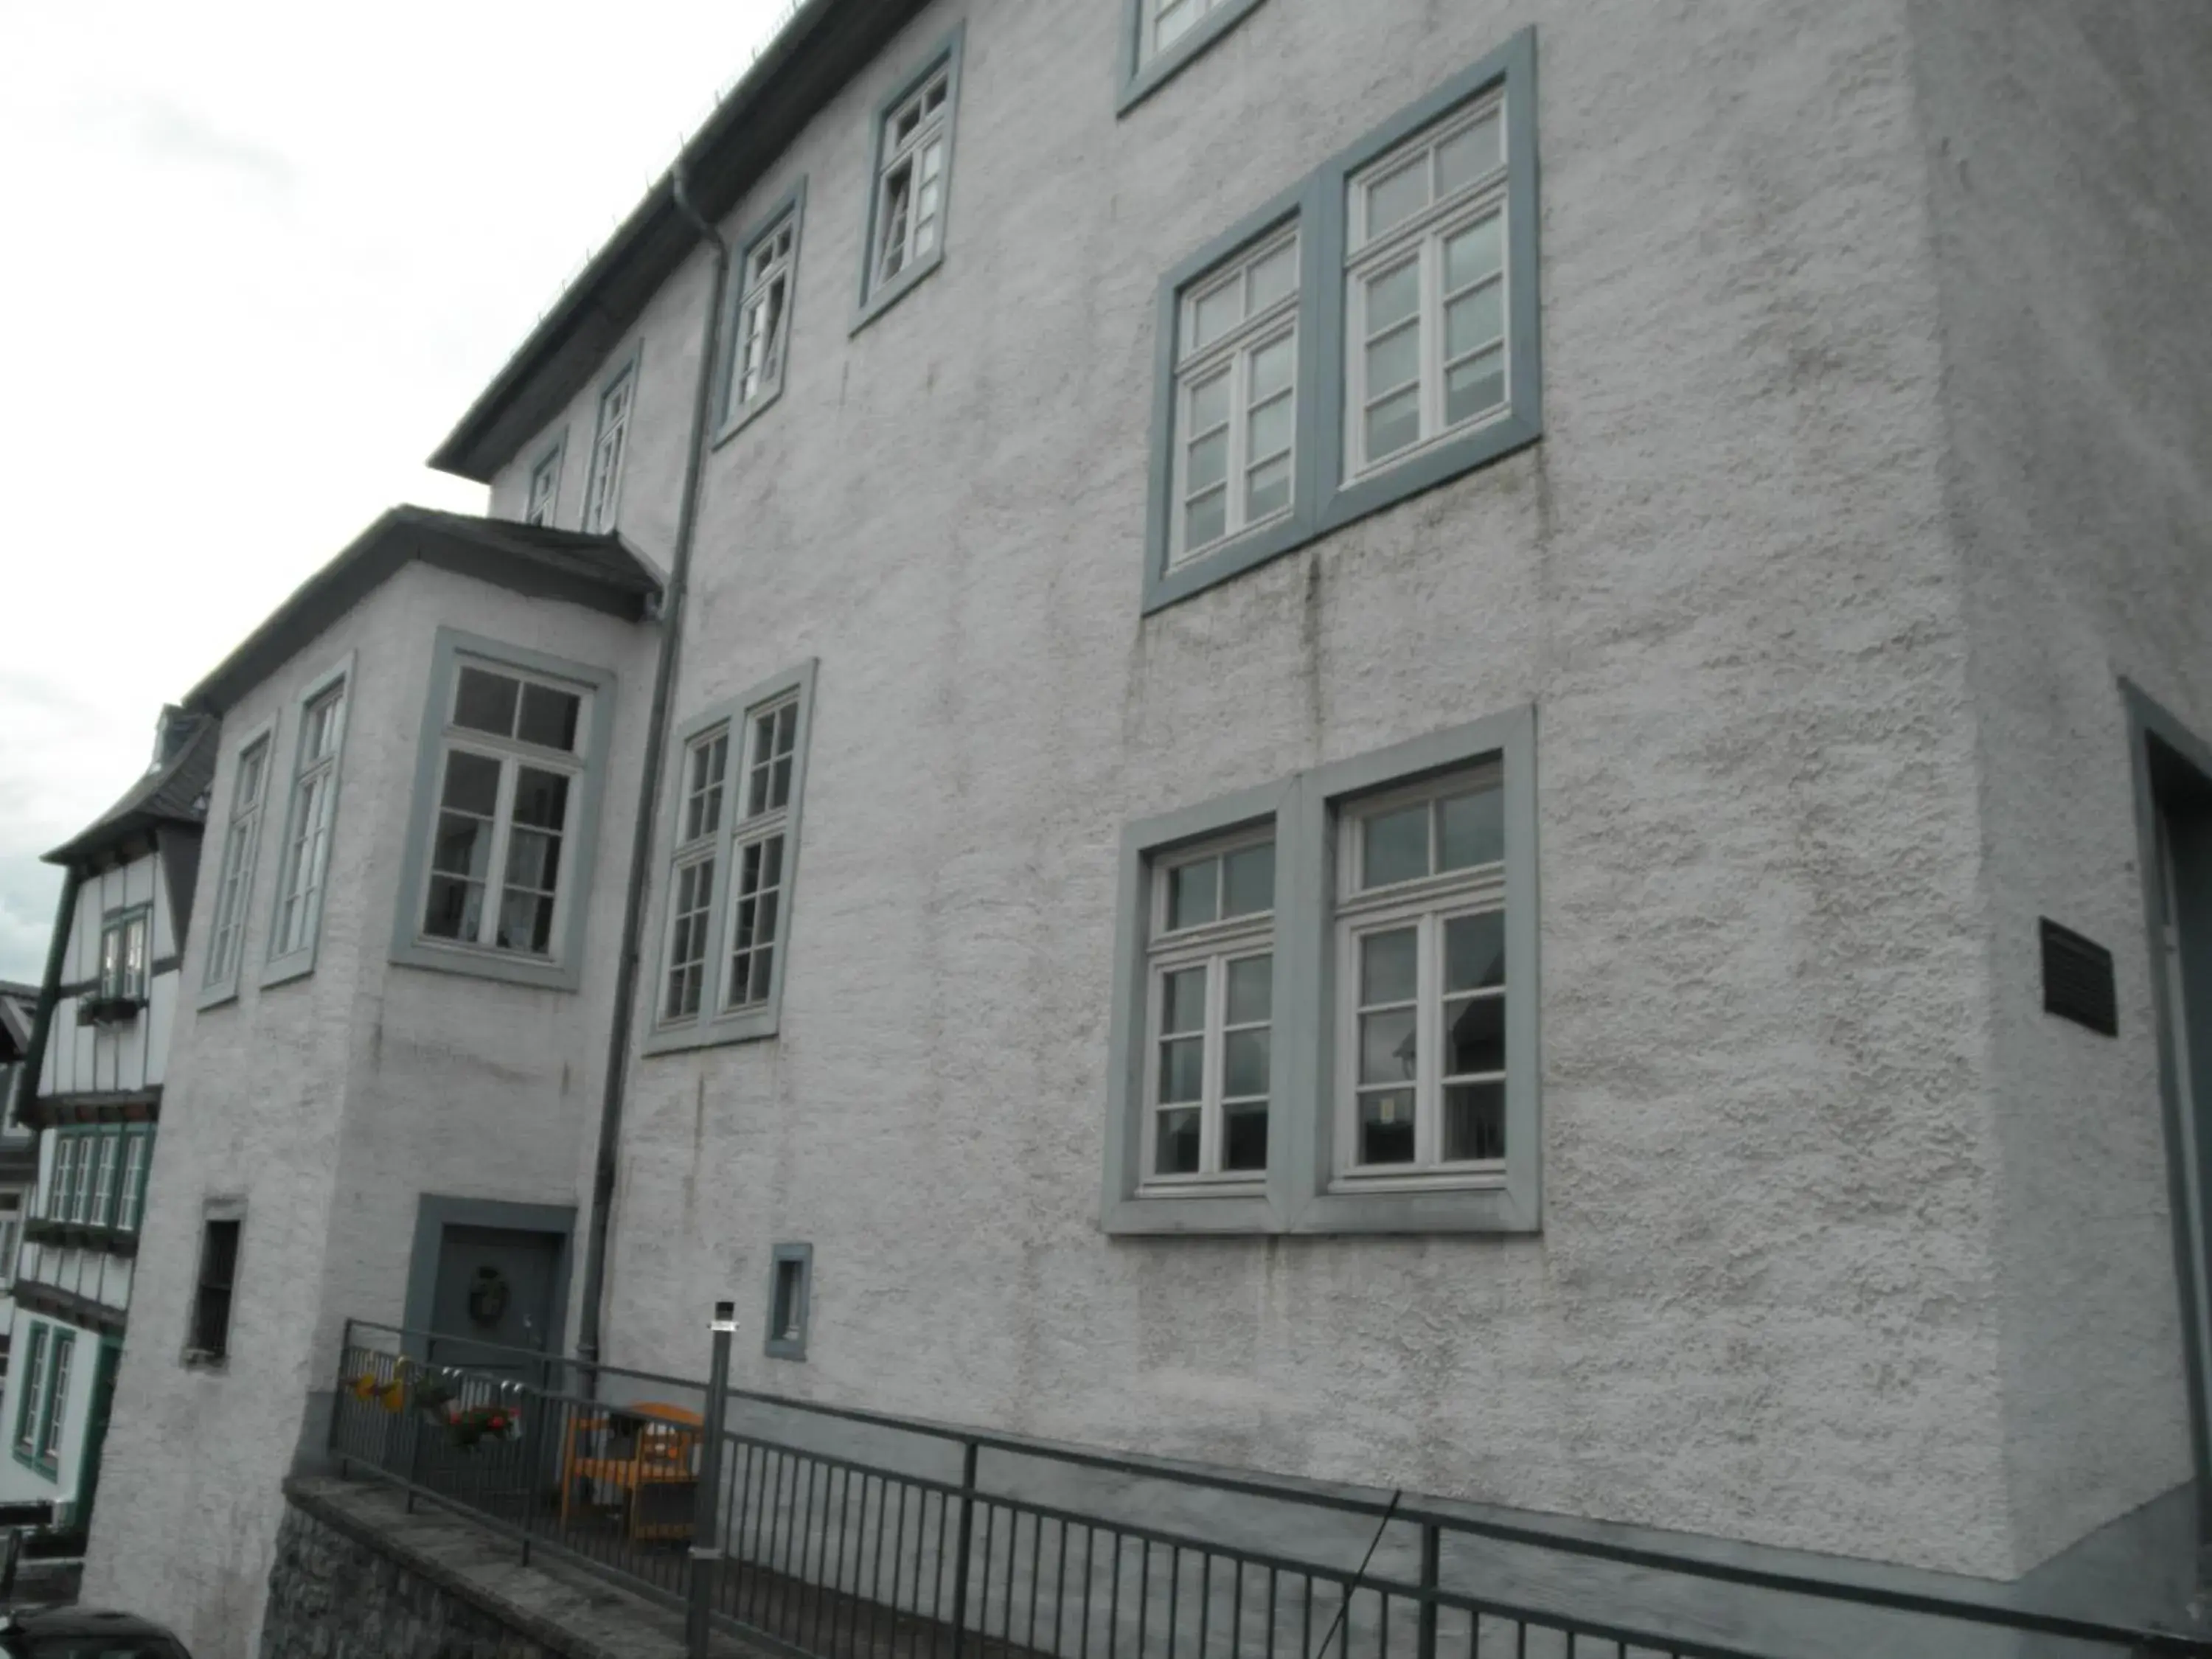 Property Building in Altstadthaus